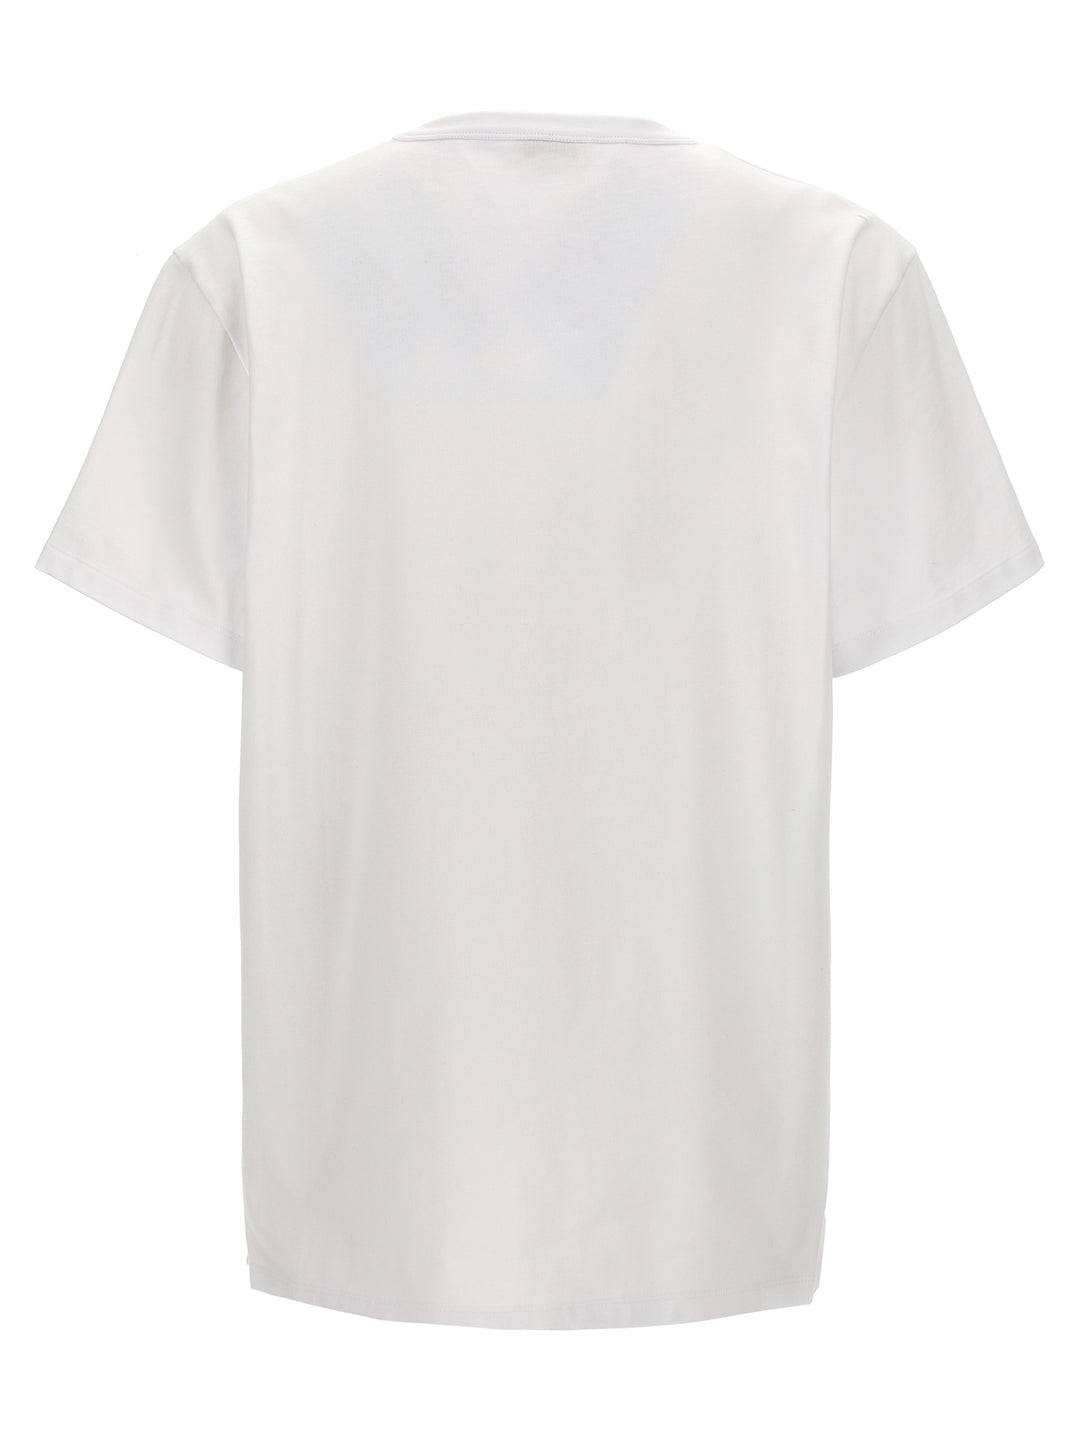 Printed T Shirt Bianco/Nero